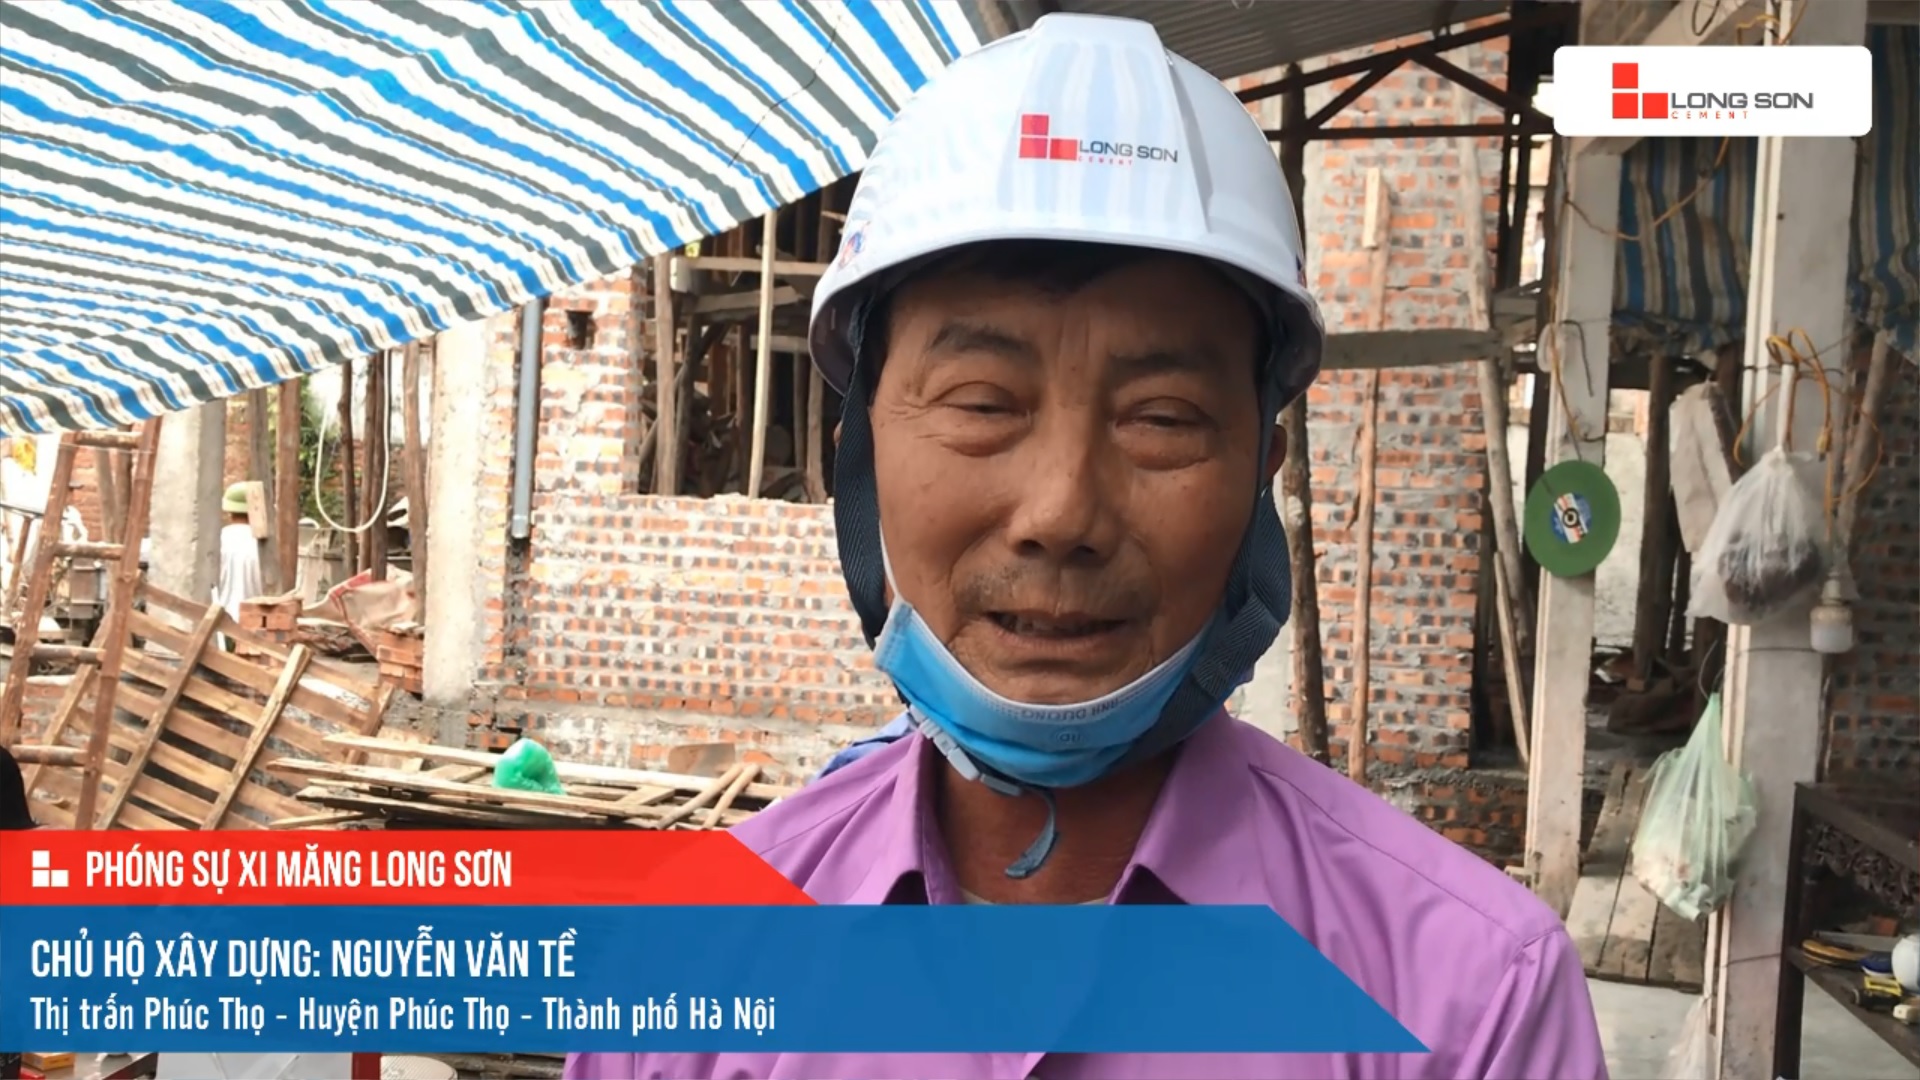 Công trình sử dụng Xi măng Long Sơn tại Hà Nội 23.03.2022